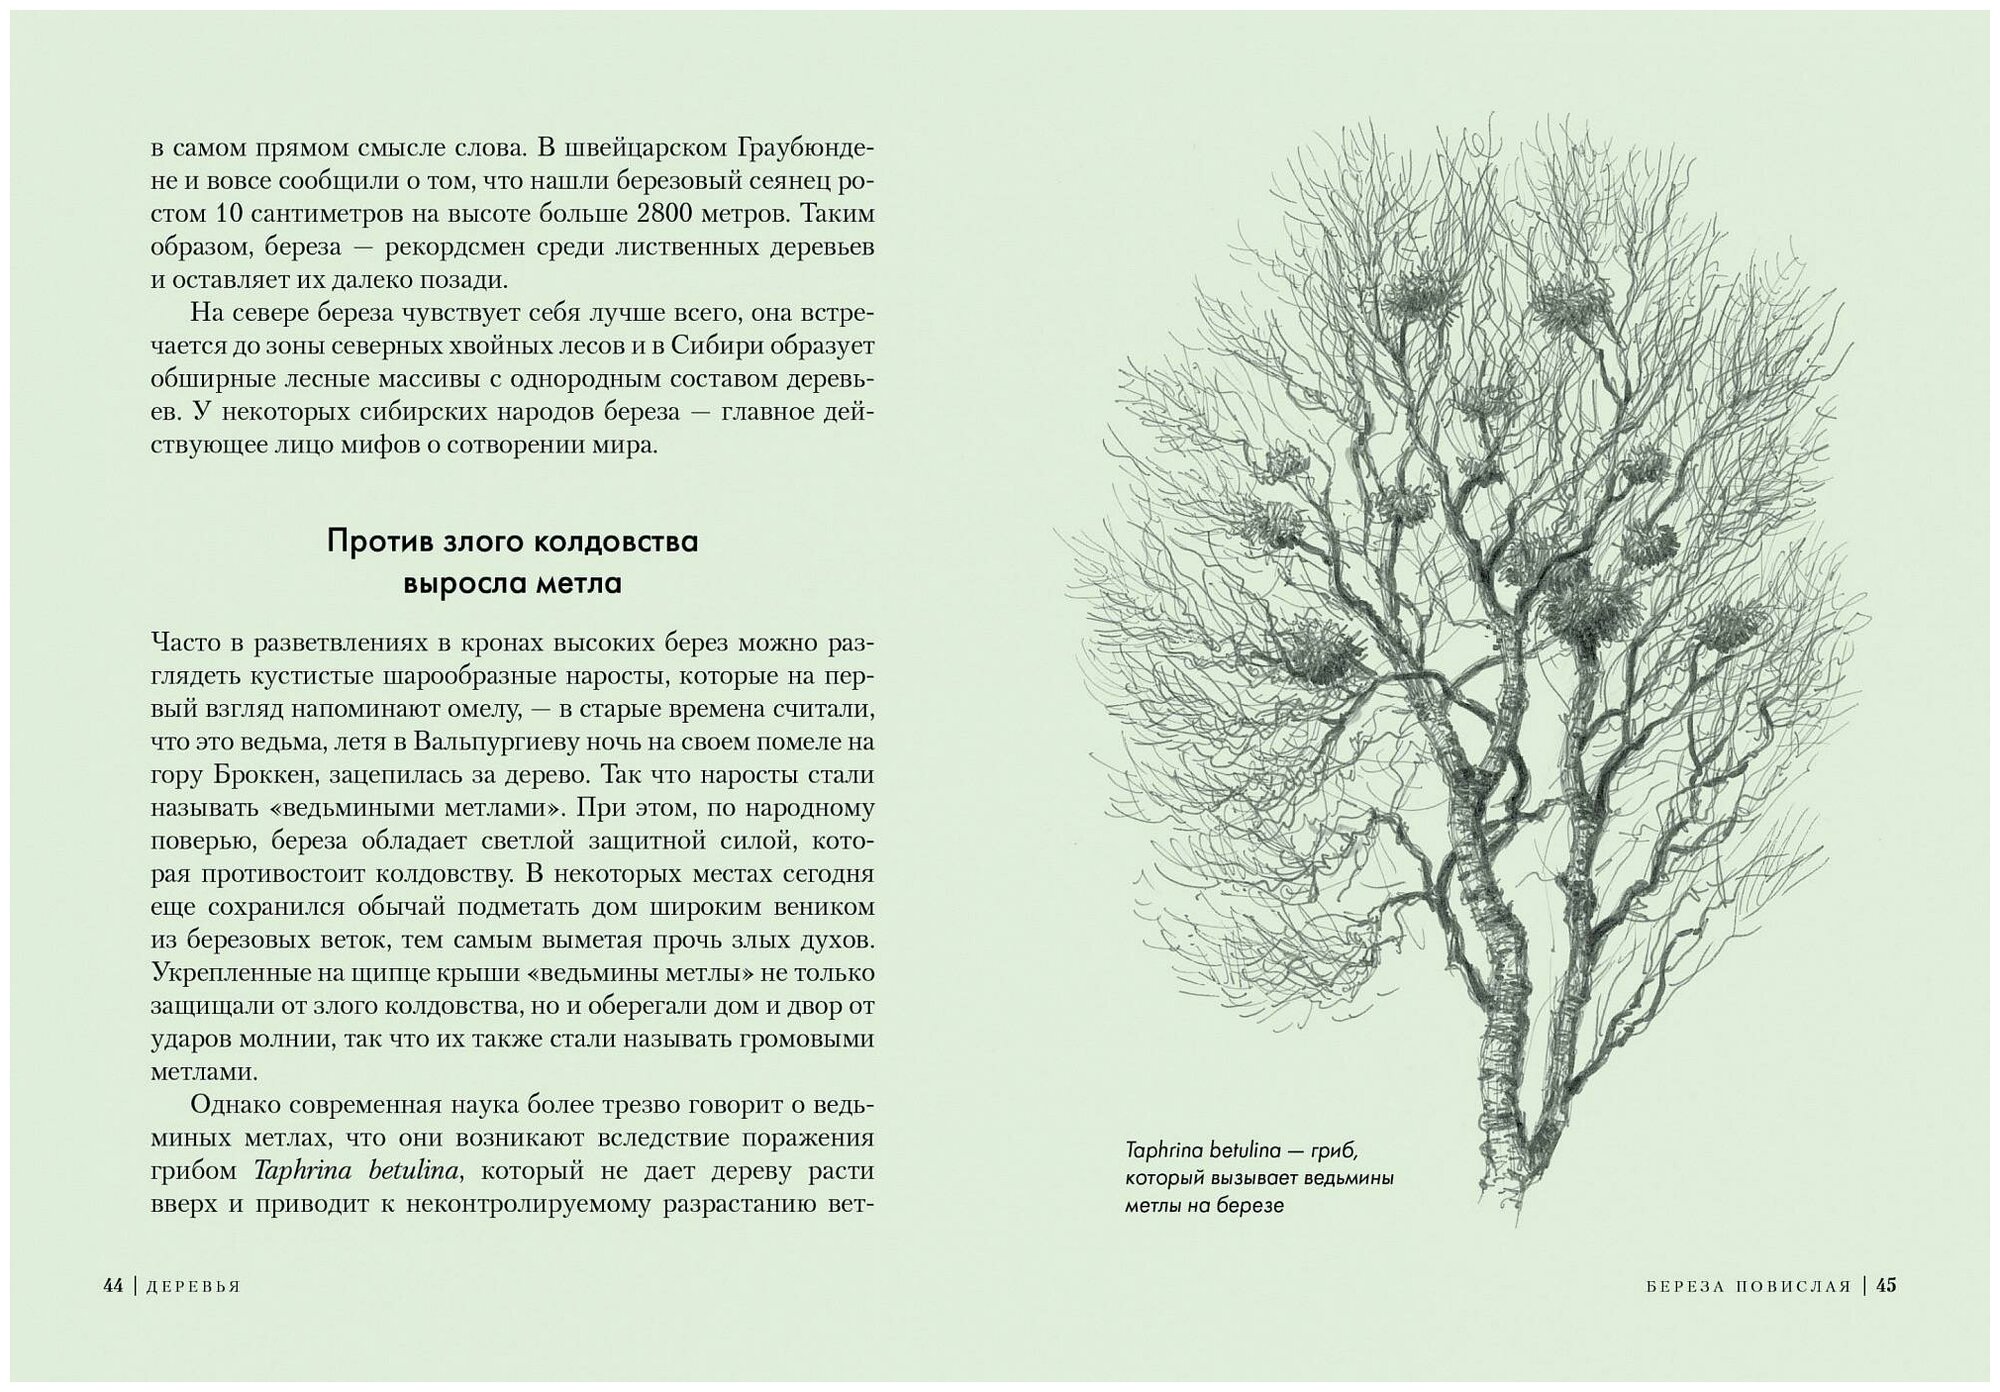 Деревья: Как жизни человека и дерева переплетены друг с другом - фото №4